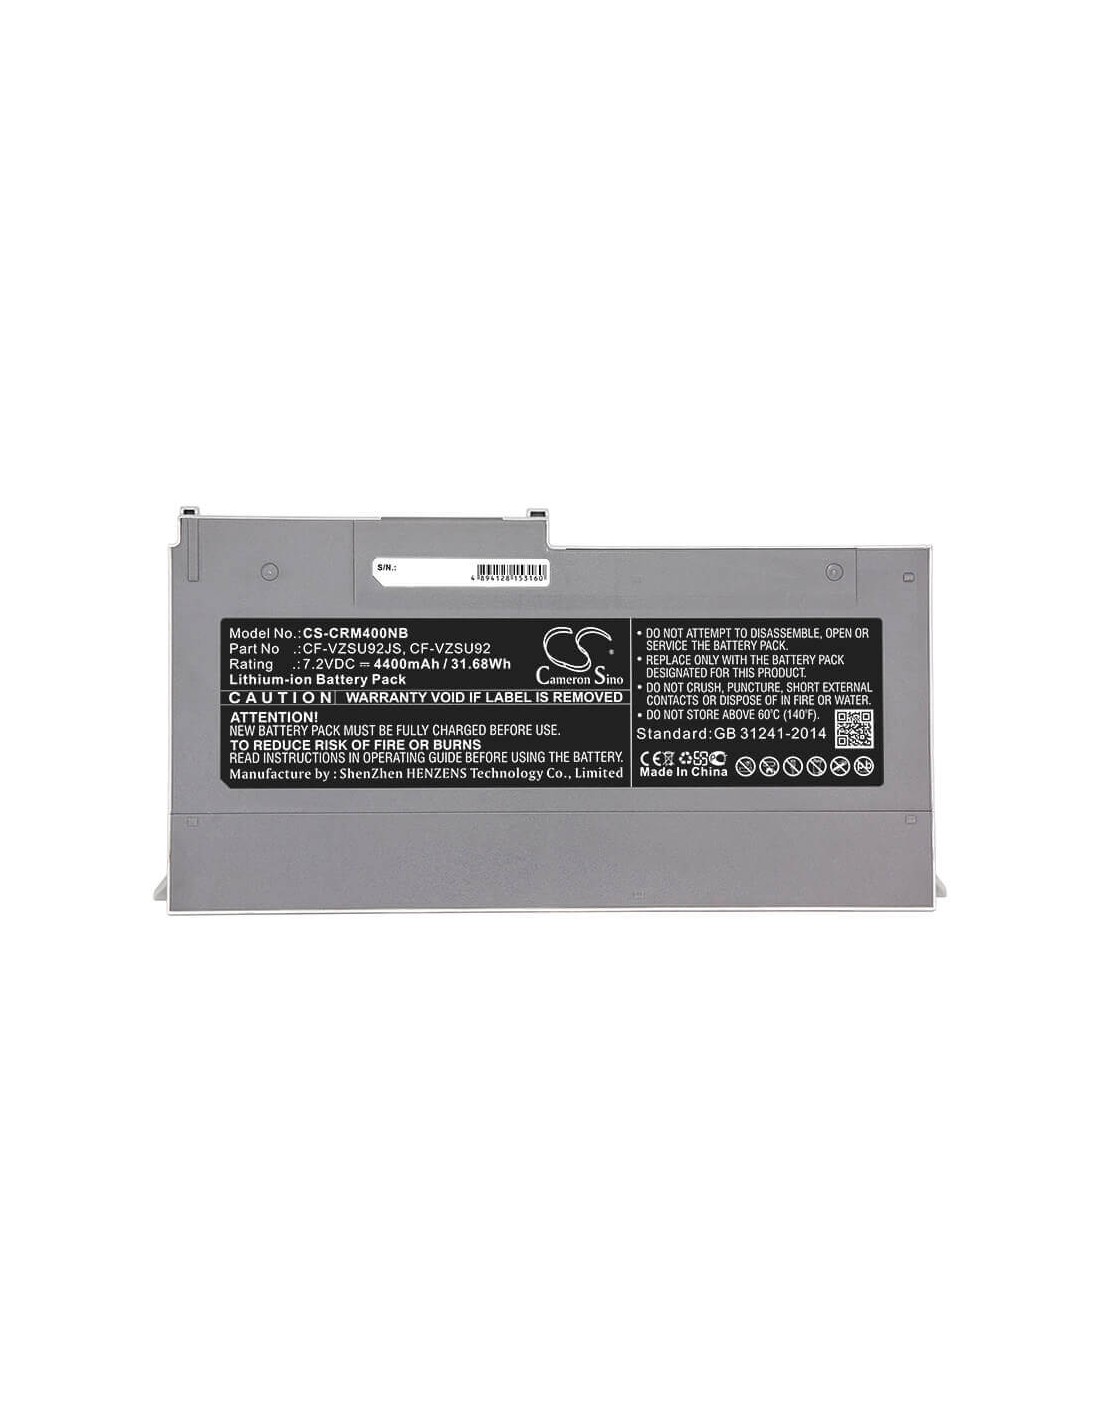 Battery for Panasonic, Cf-mx3, Cf-mx4, Cf-mx5 7.2V, 4400mAh - 31.68Wh